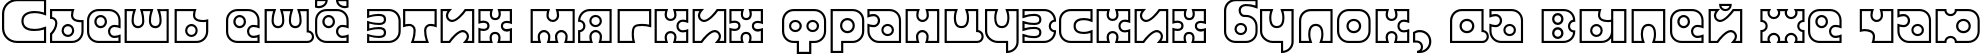 Пример написания шрифтом Joker Outline текста на русском